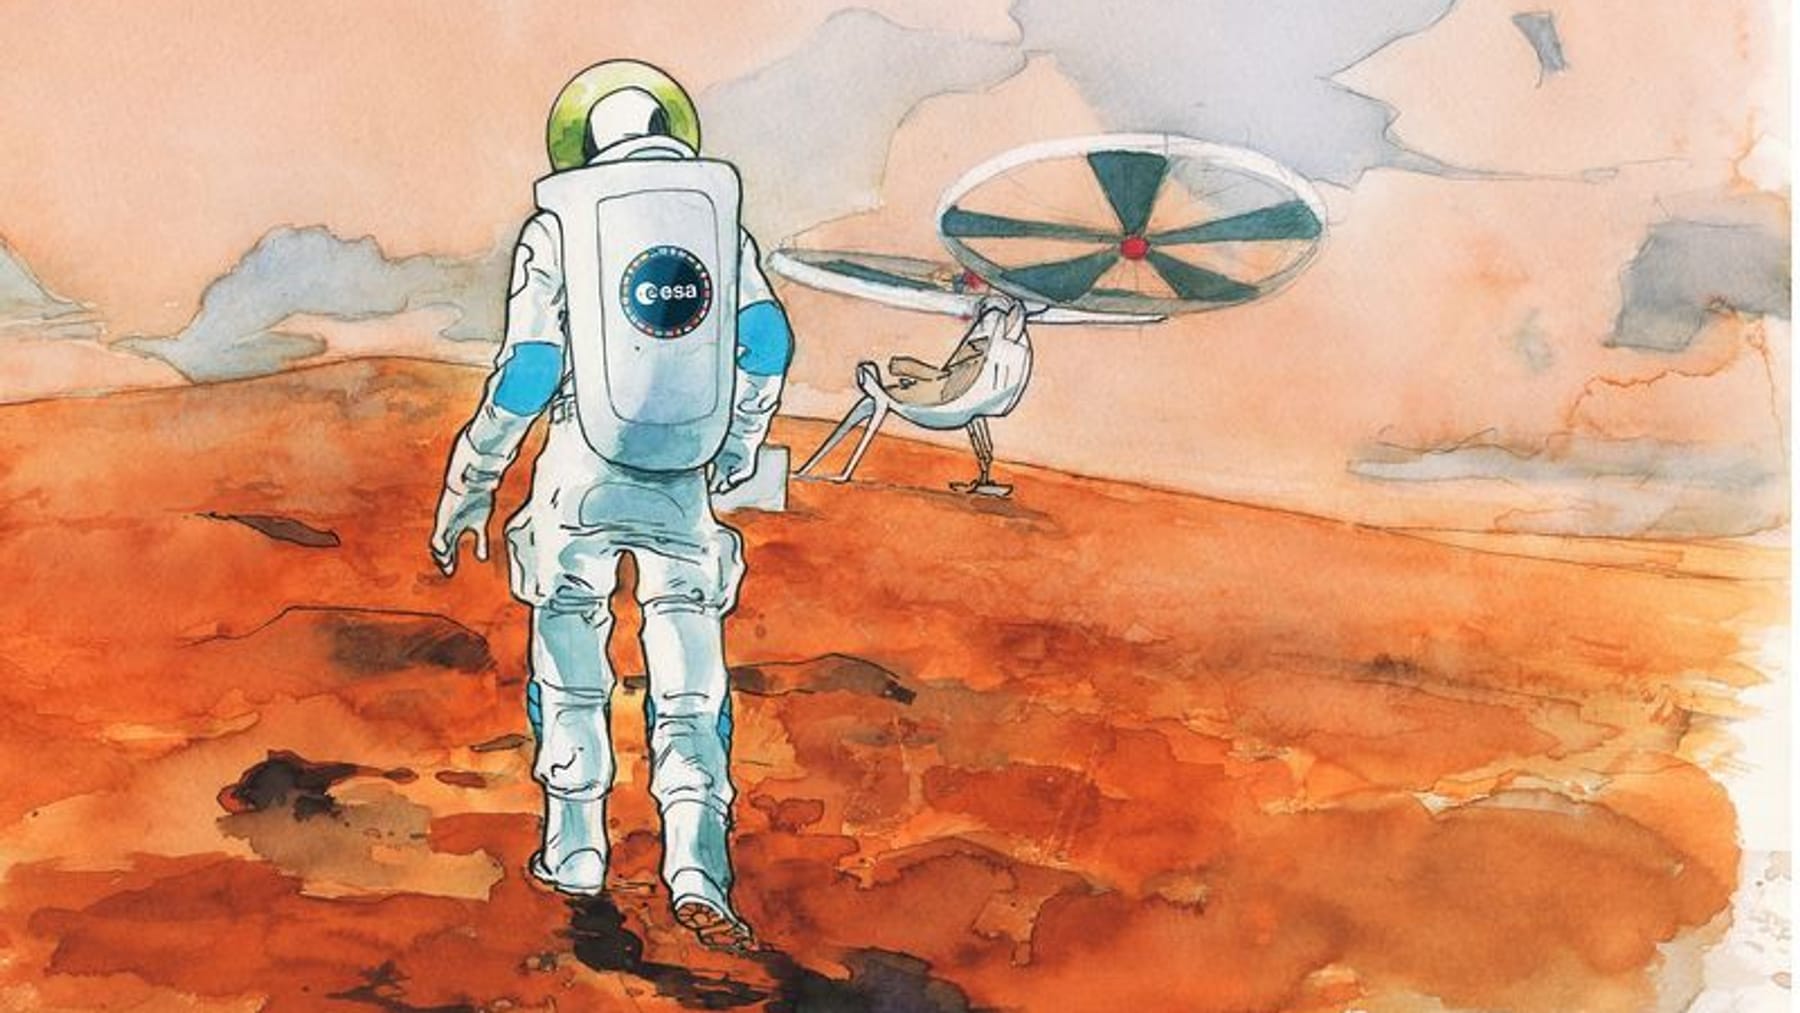 Europa quiere enviar un astronauta europeo a Marte antes de 2040